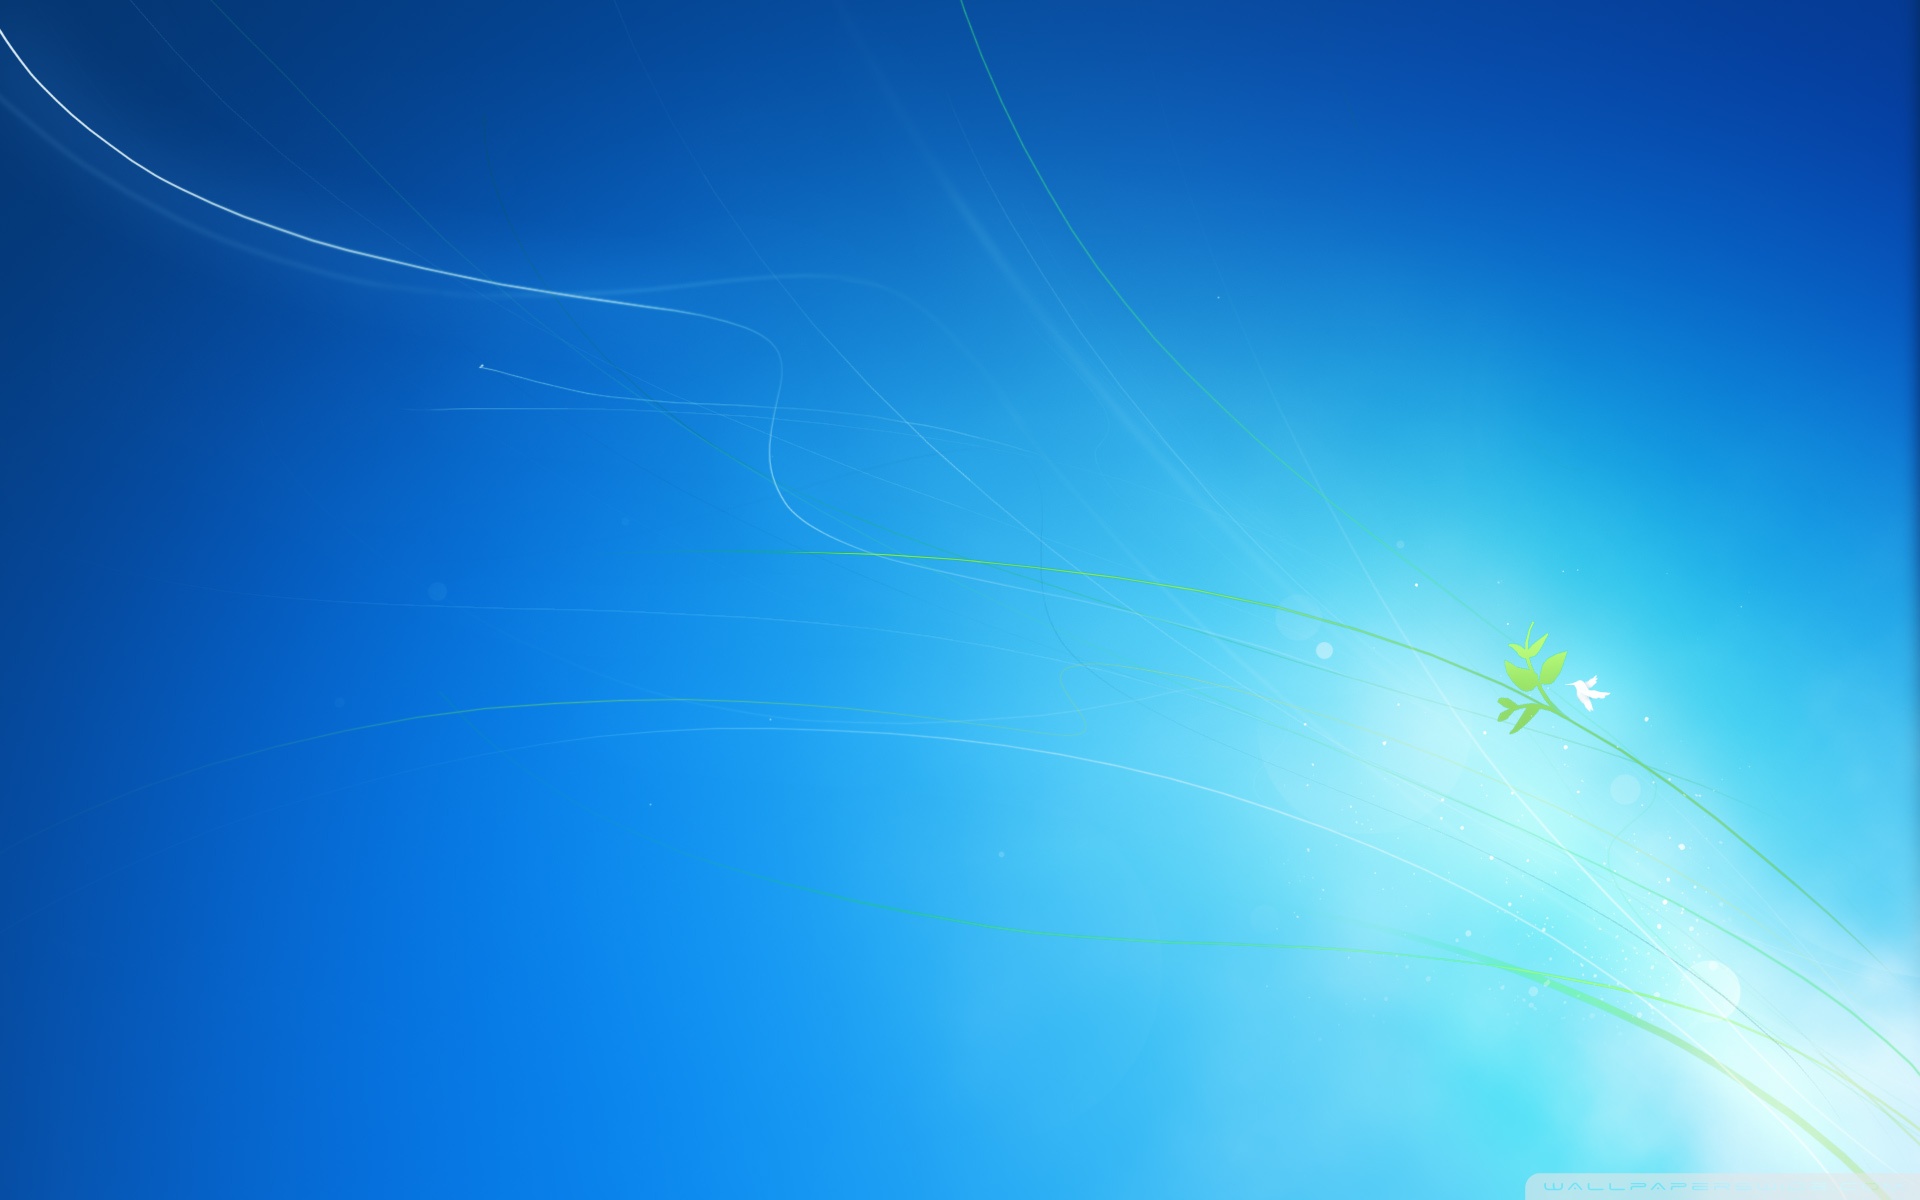 Tải ngay miễn phí bộ Windows 7 Clean Blue HD với giao diện tươi sáng và mới lạ, mang đến trải nghiệm làm việc thú vị và hiệu quả hơn. Đặc biệt, đây là bản Windows ổn định, giúp bạn làm việc mà không phải lo lắng về lỗi hệ thống. Nhấp chuột và cùng đón chờ những trải nghiệm tuyệt vời từ Windows 7 Clean Blue HD.